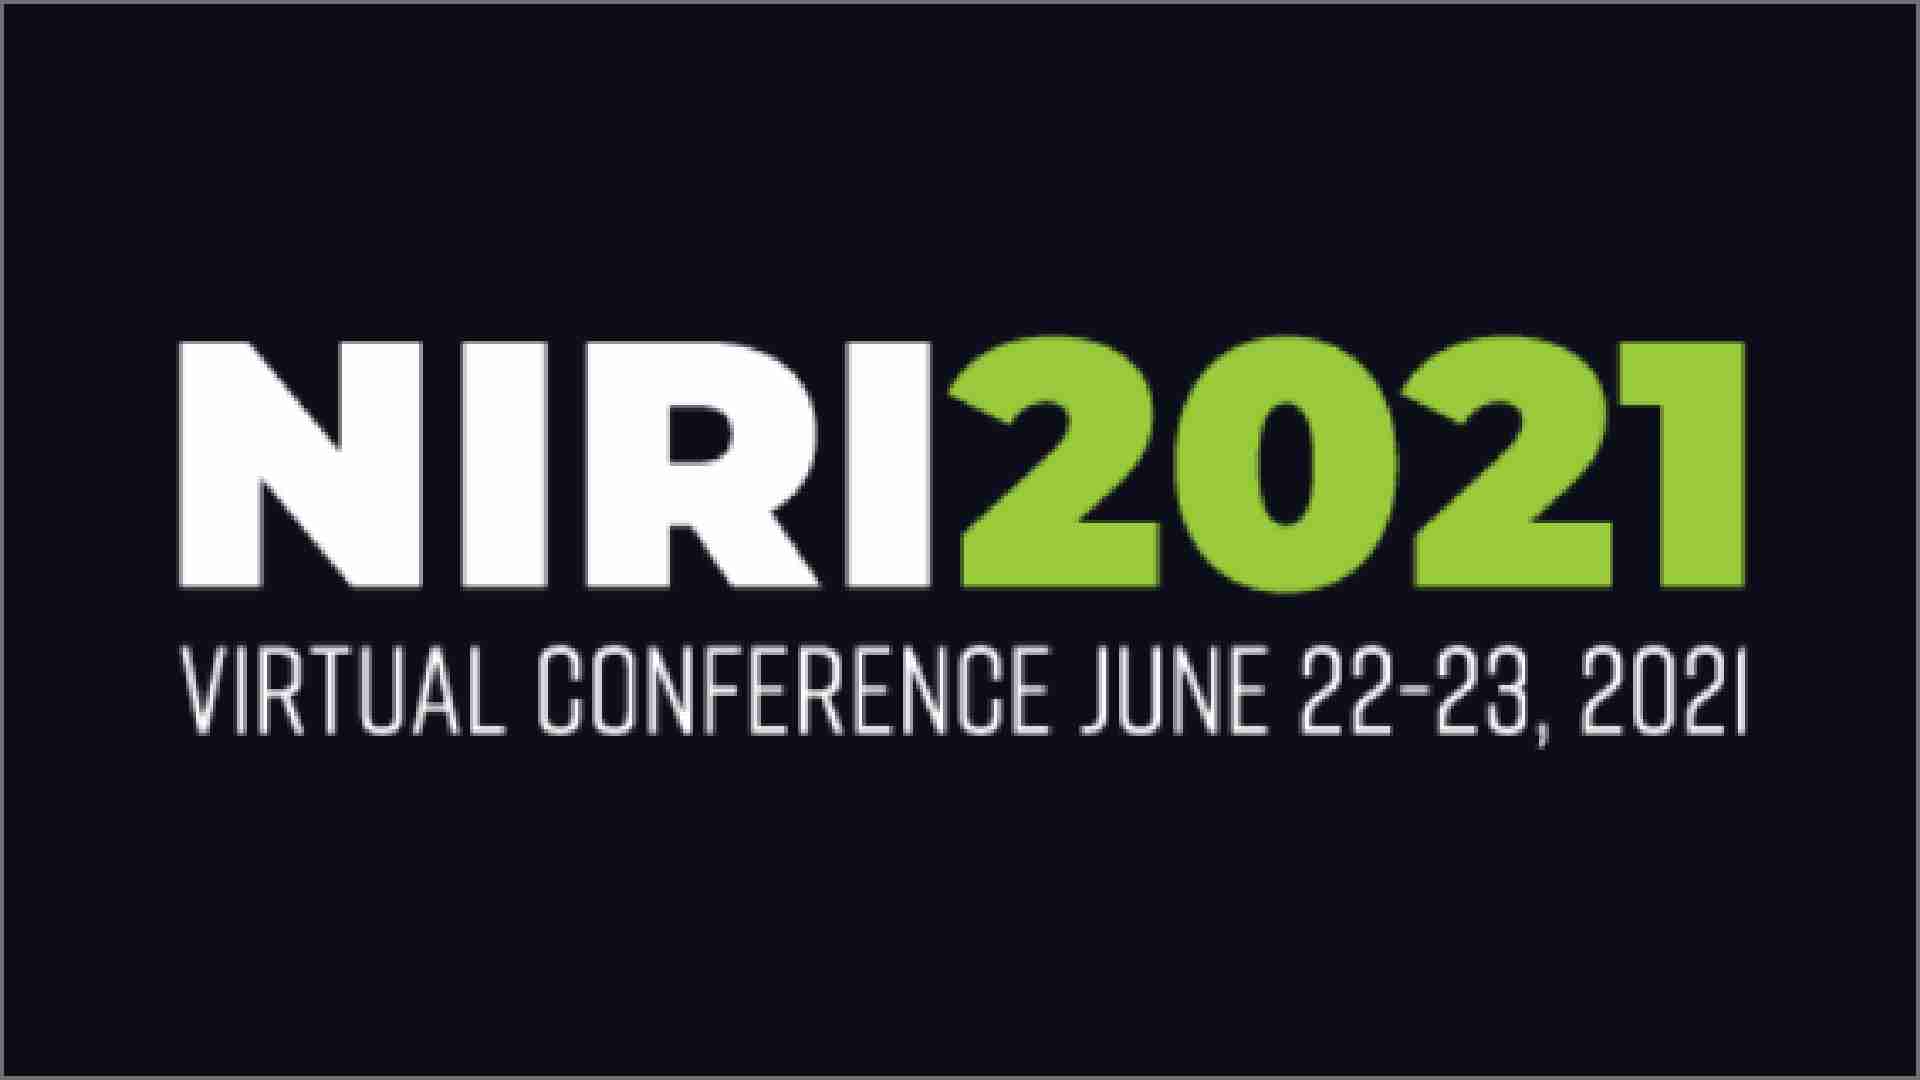 NIRI 2021 Virtual Conference, June 22-23